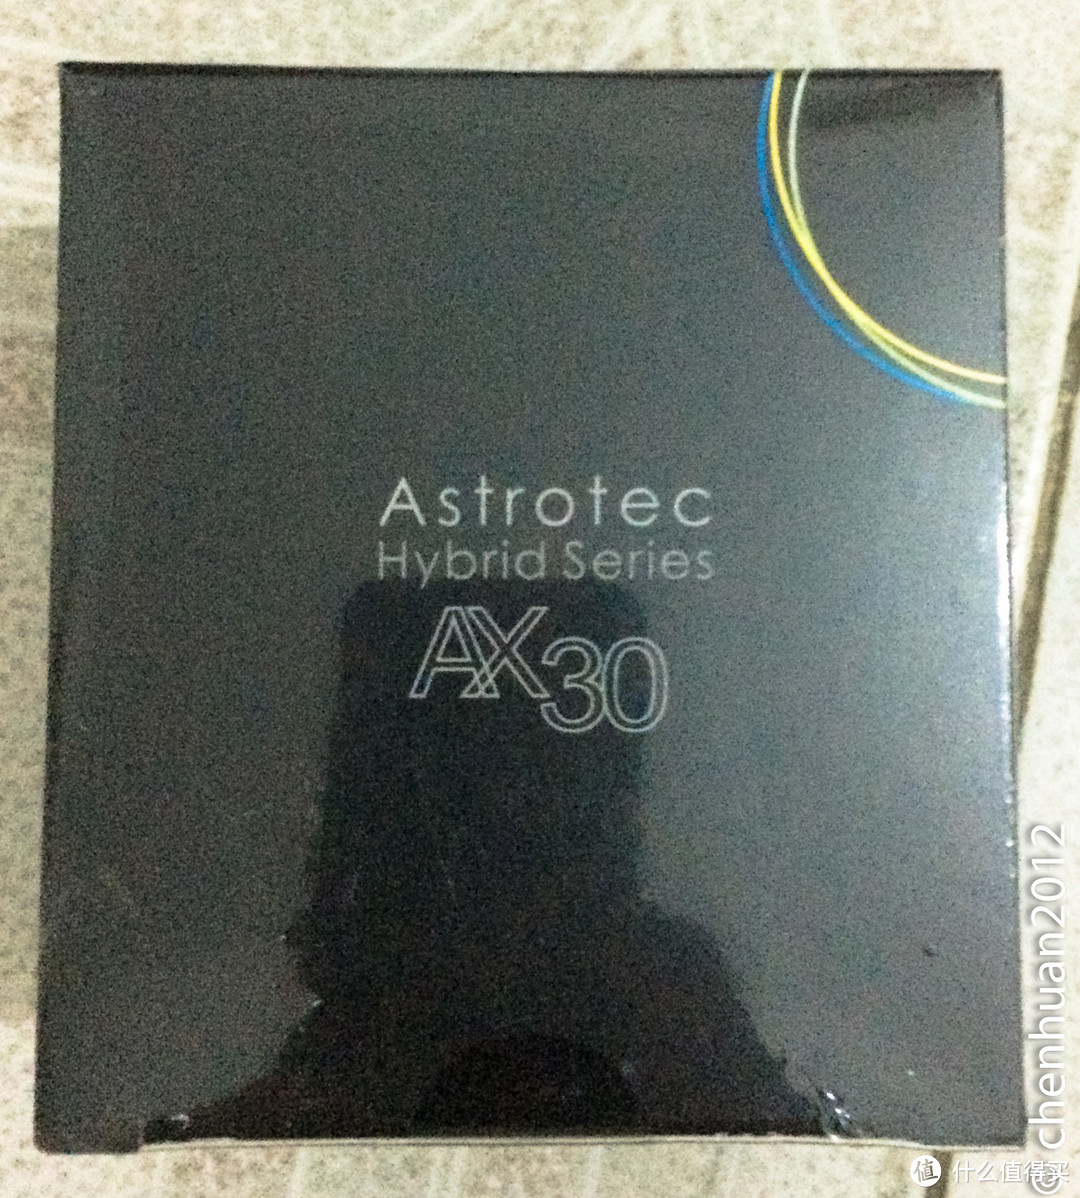 来自国产的惊艳：Astrotec 阿思翠低端圈铁 AX30 入耳式耳机